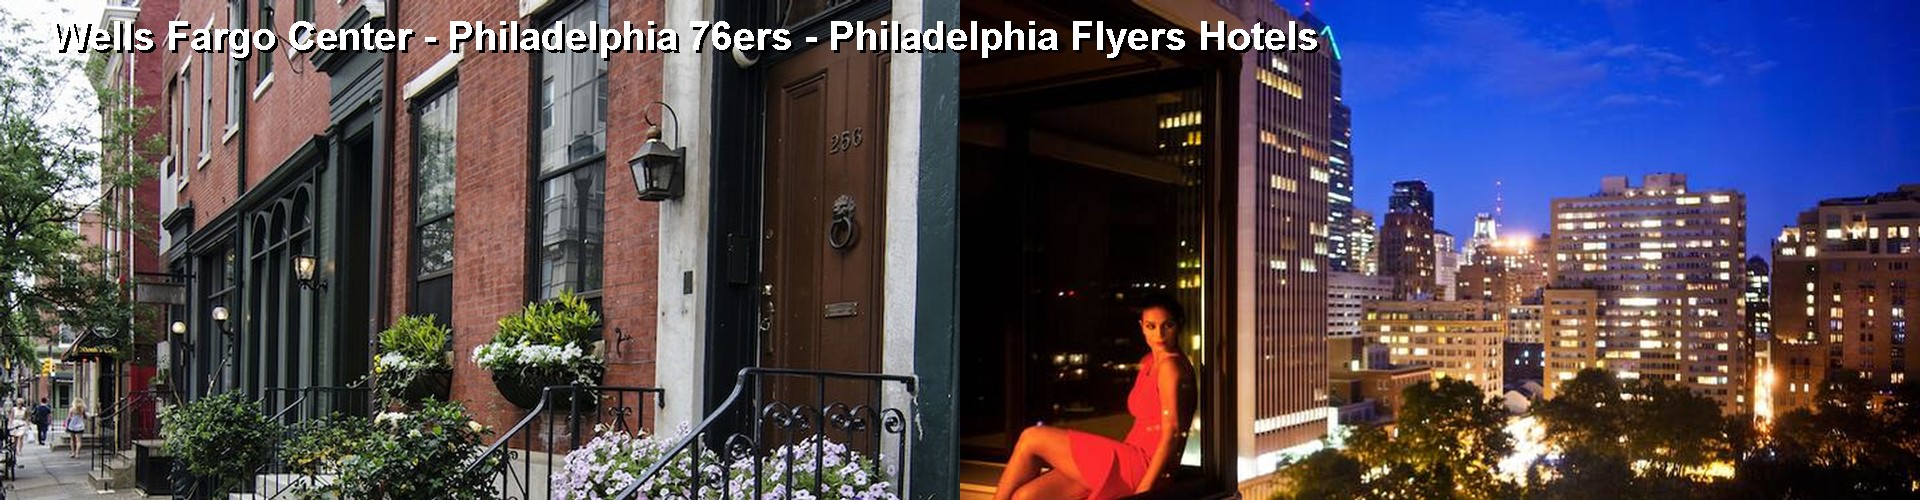 5 Best Hotels near Wells Fargo Center - Philadelphia 76ers - Philadelphia Flyers